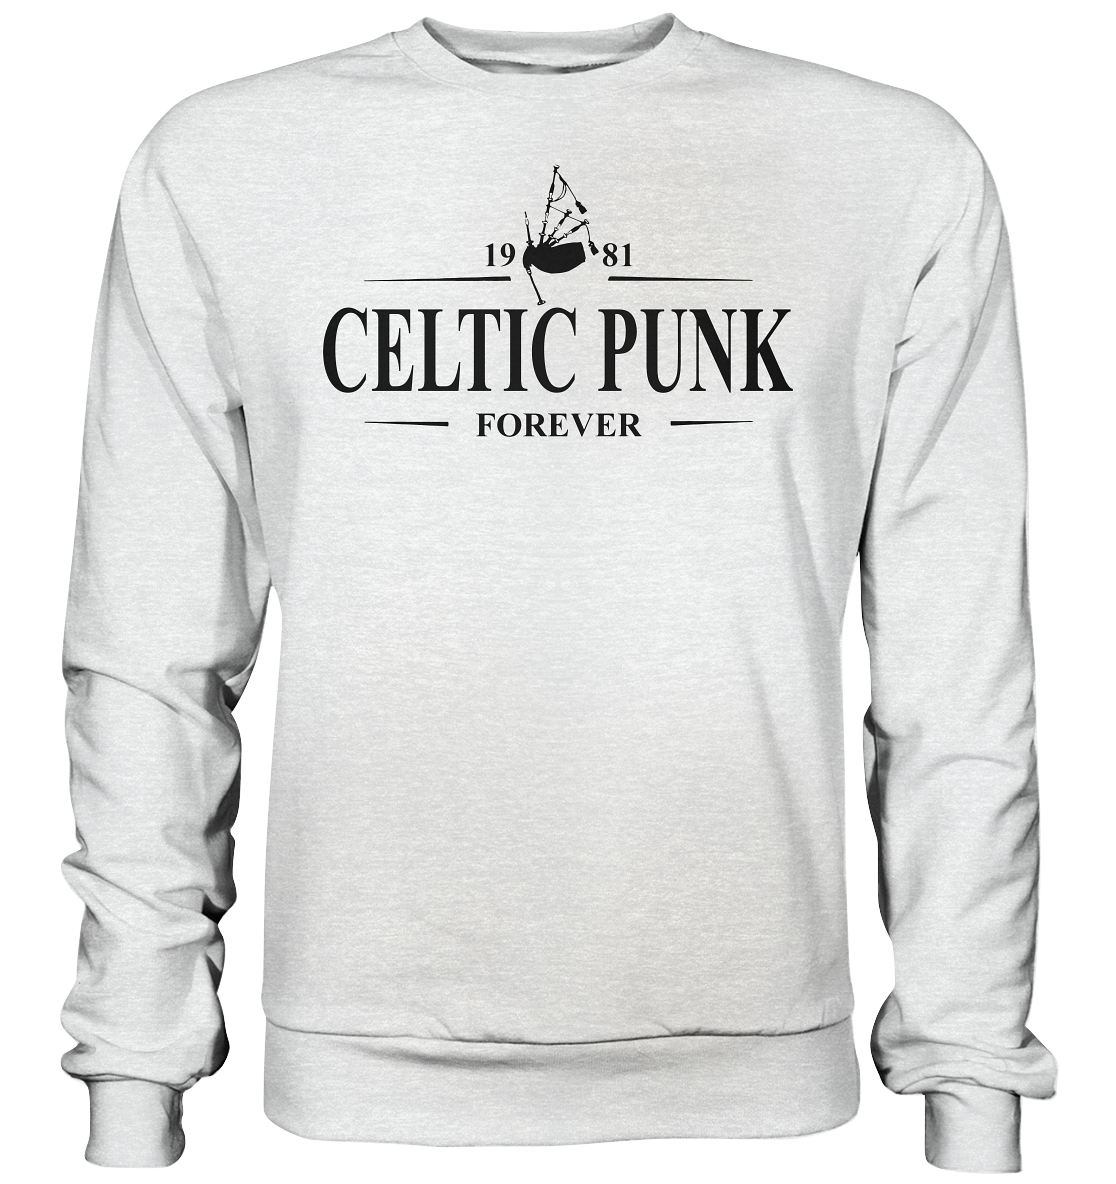 Celtic Punk "Forever" - Premium Sweatshirt